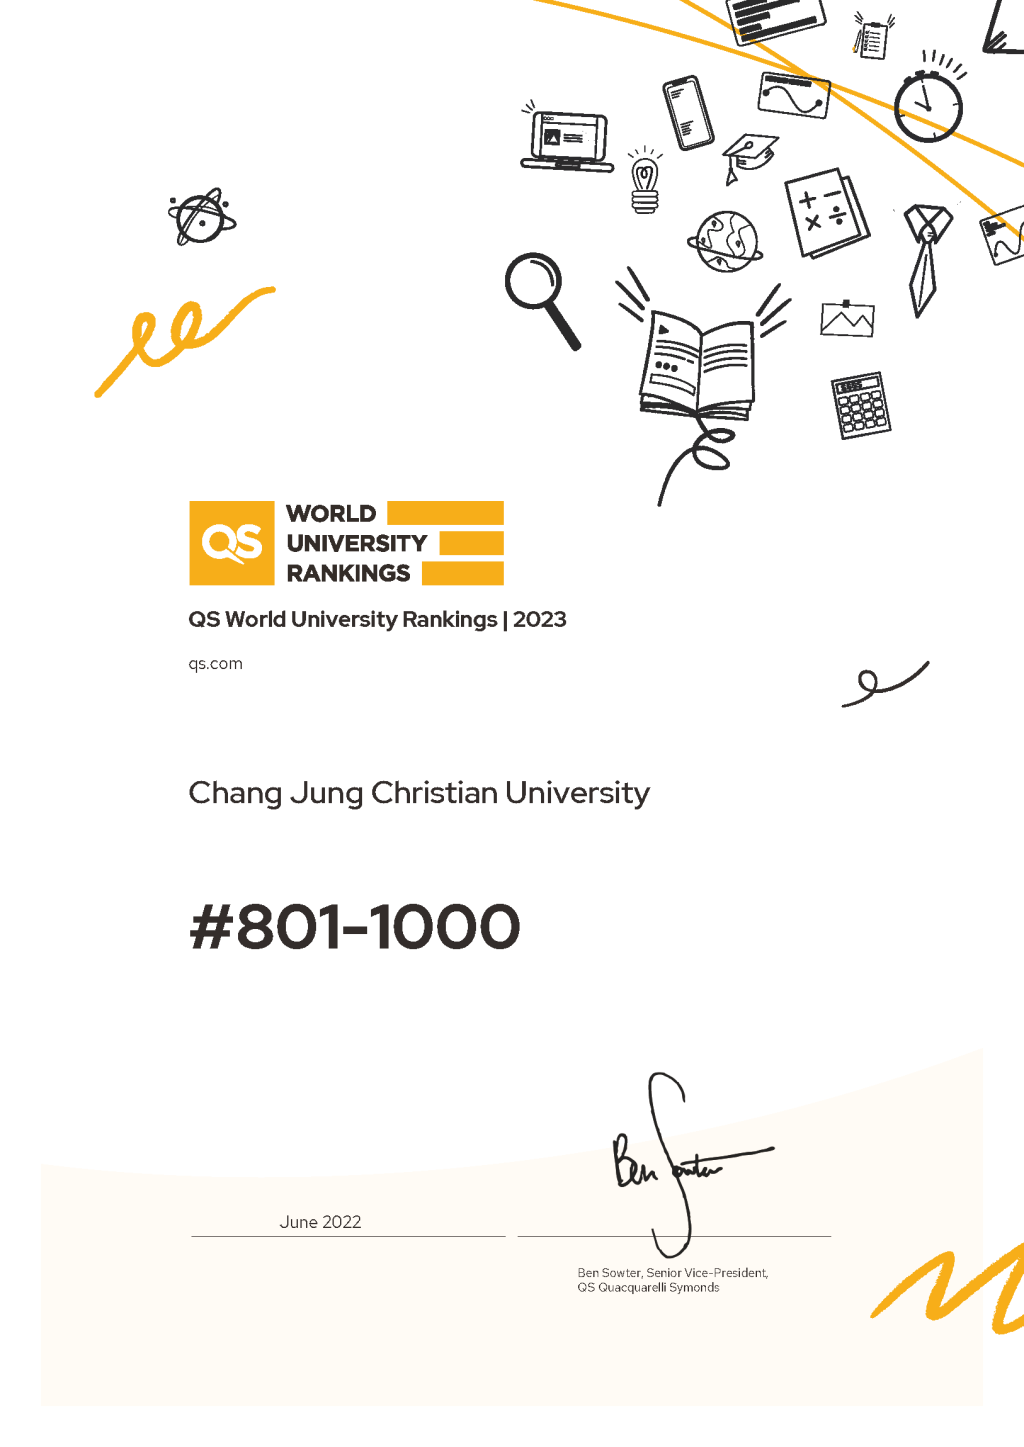 長榮大學2023年QS世界大學排名大幅躍進200名 名列前57%!